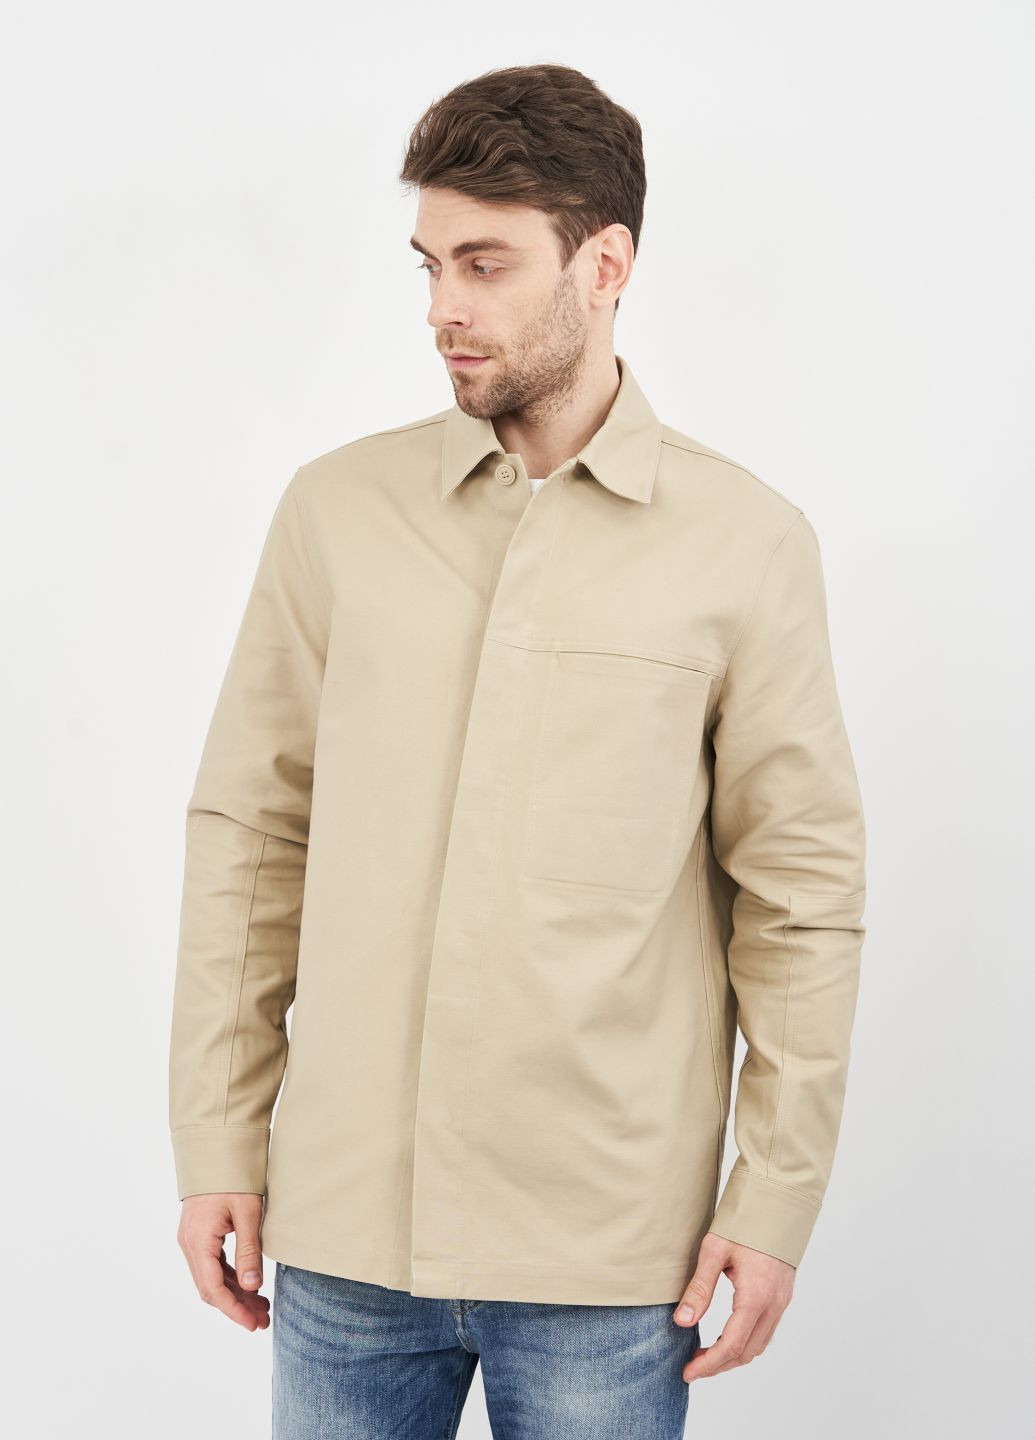 Пиджак H&M однотонный светло-бежевый кэжуал хлопок